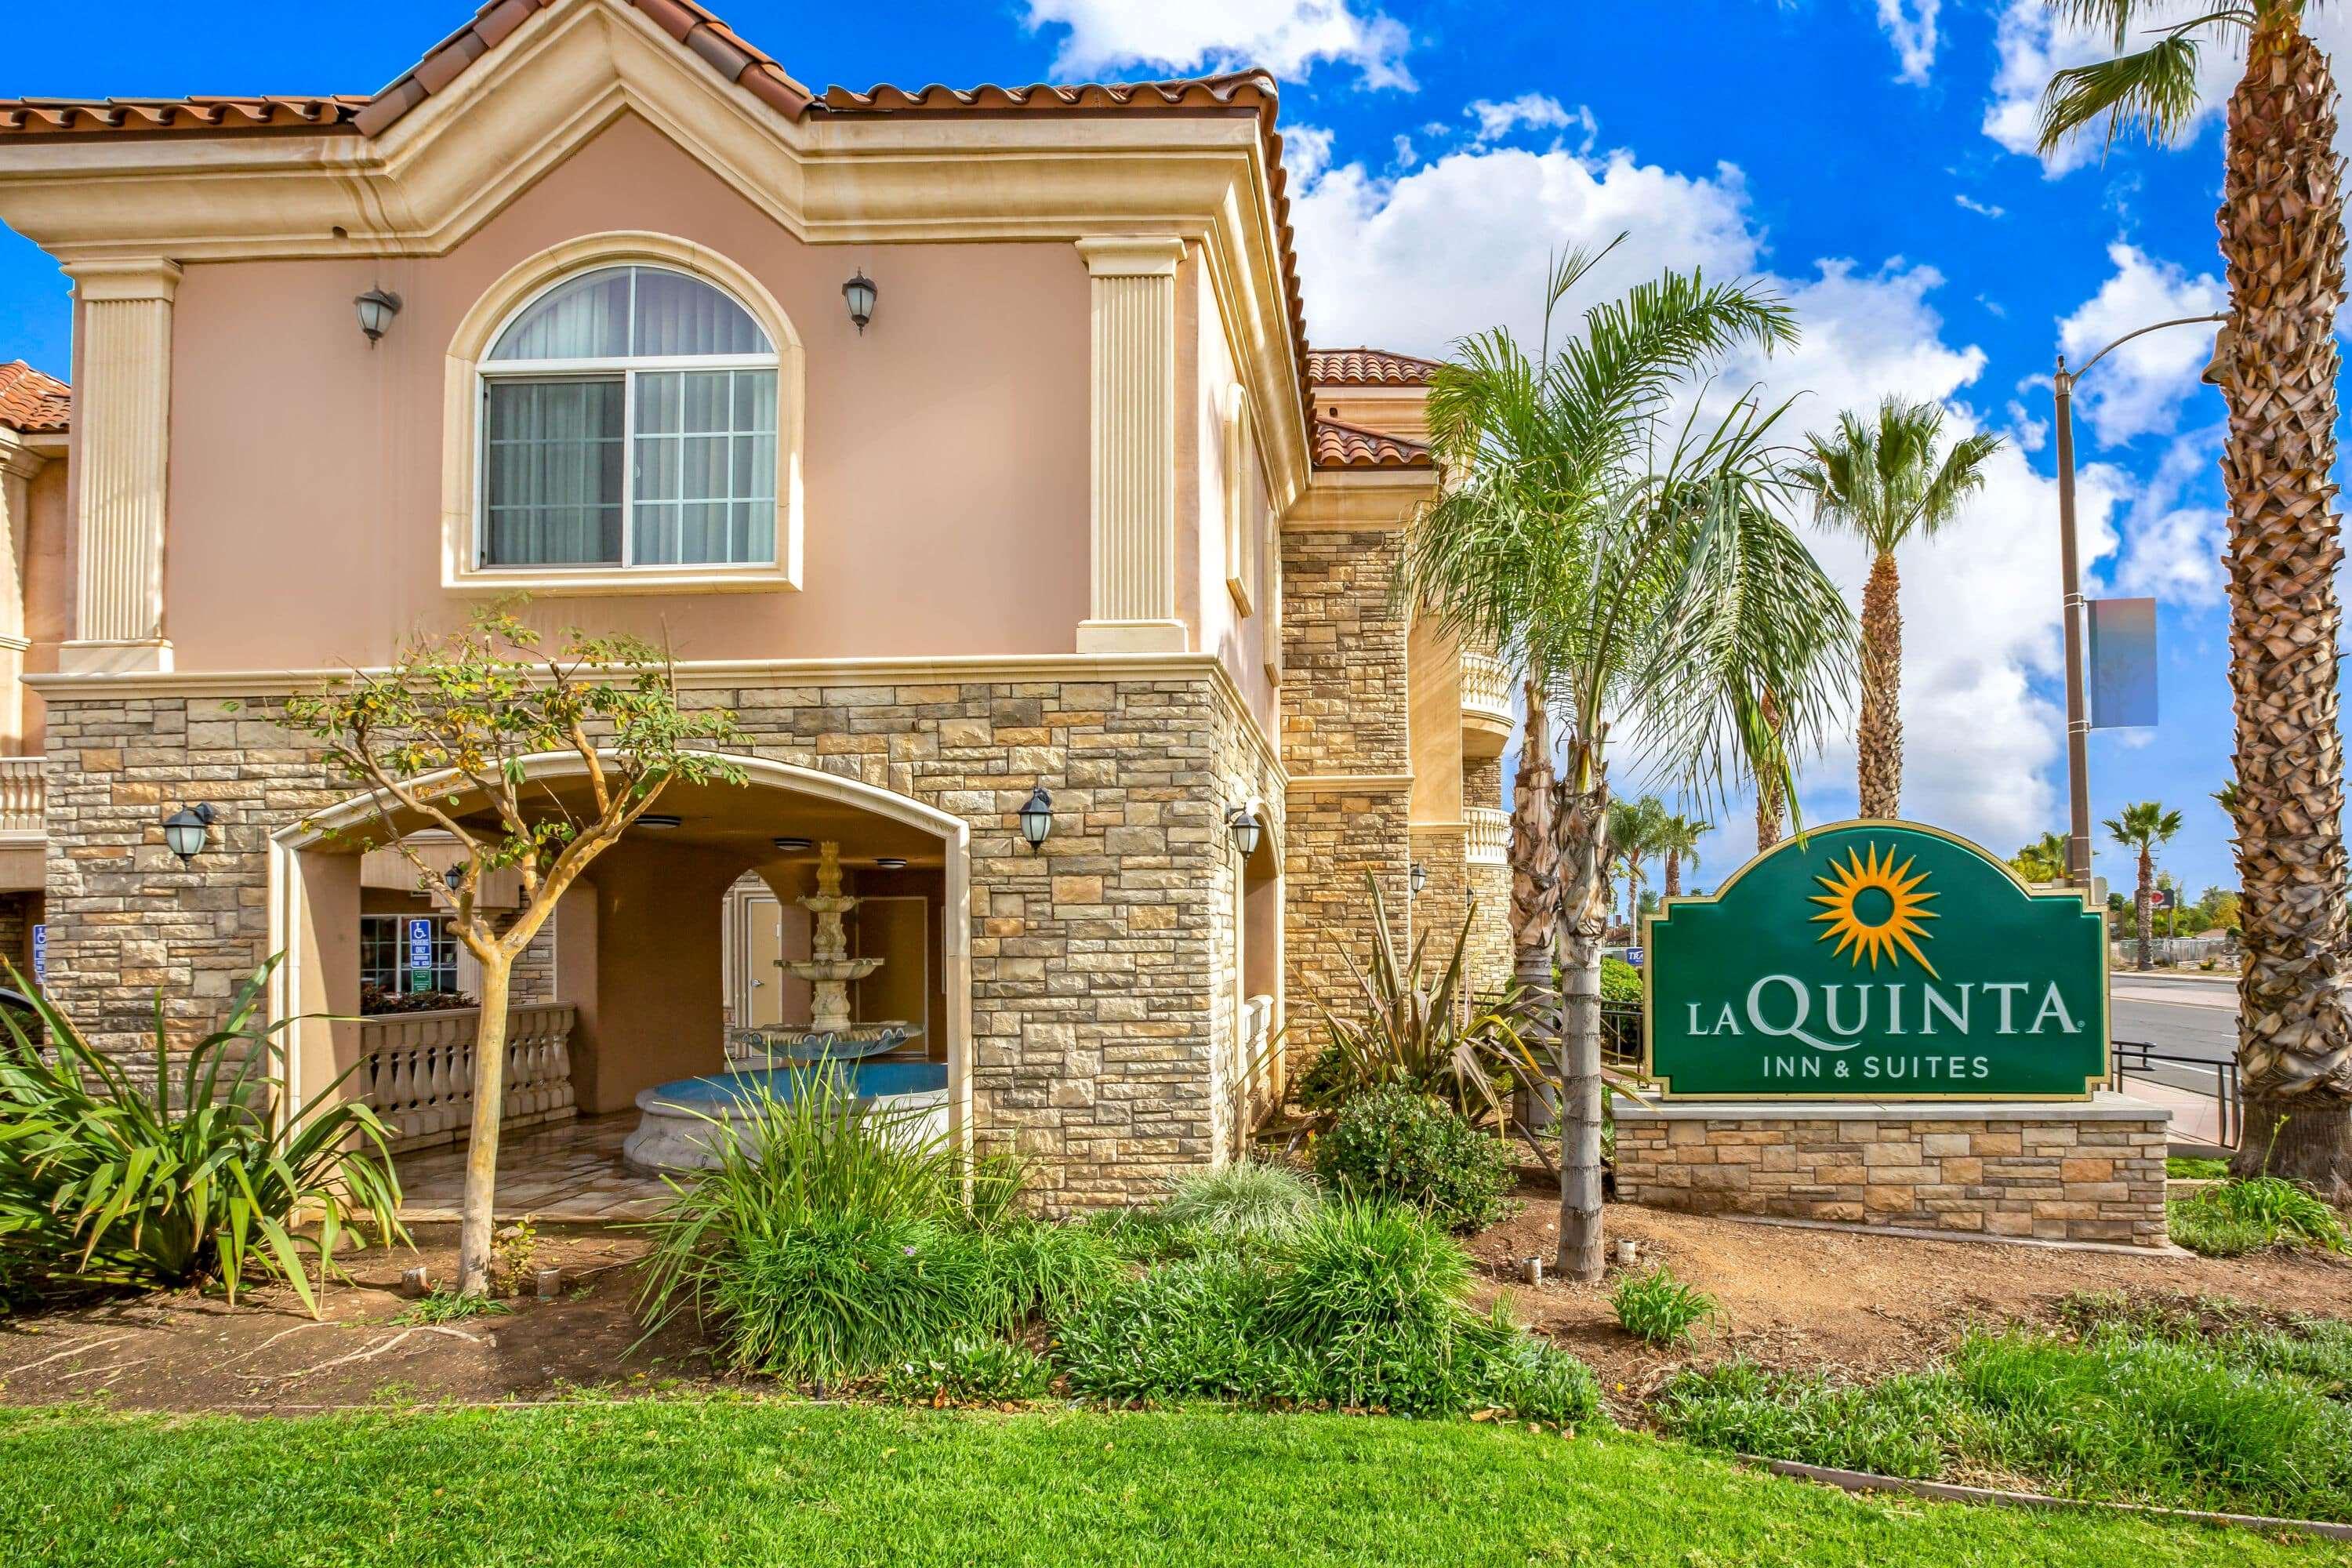 La Quinta Inn & Suites Moreno Valley